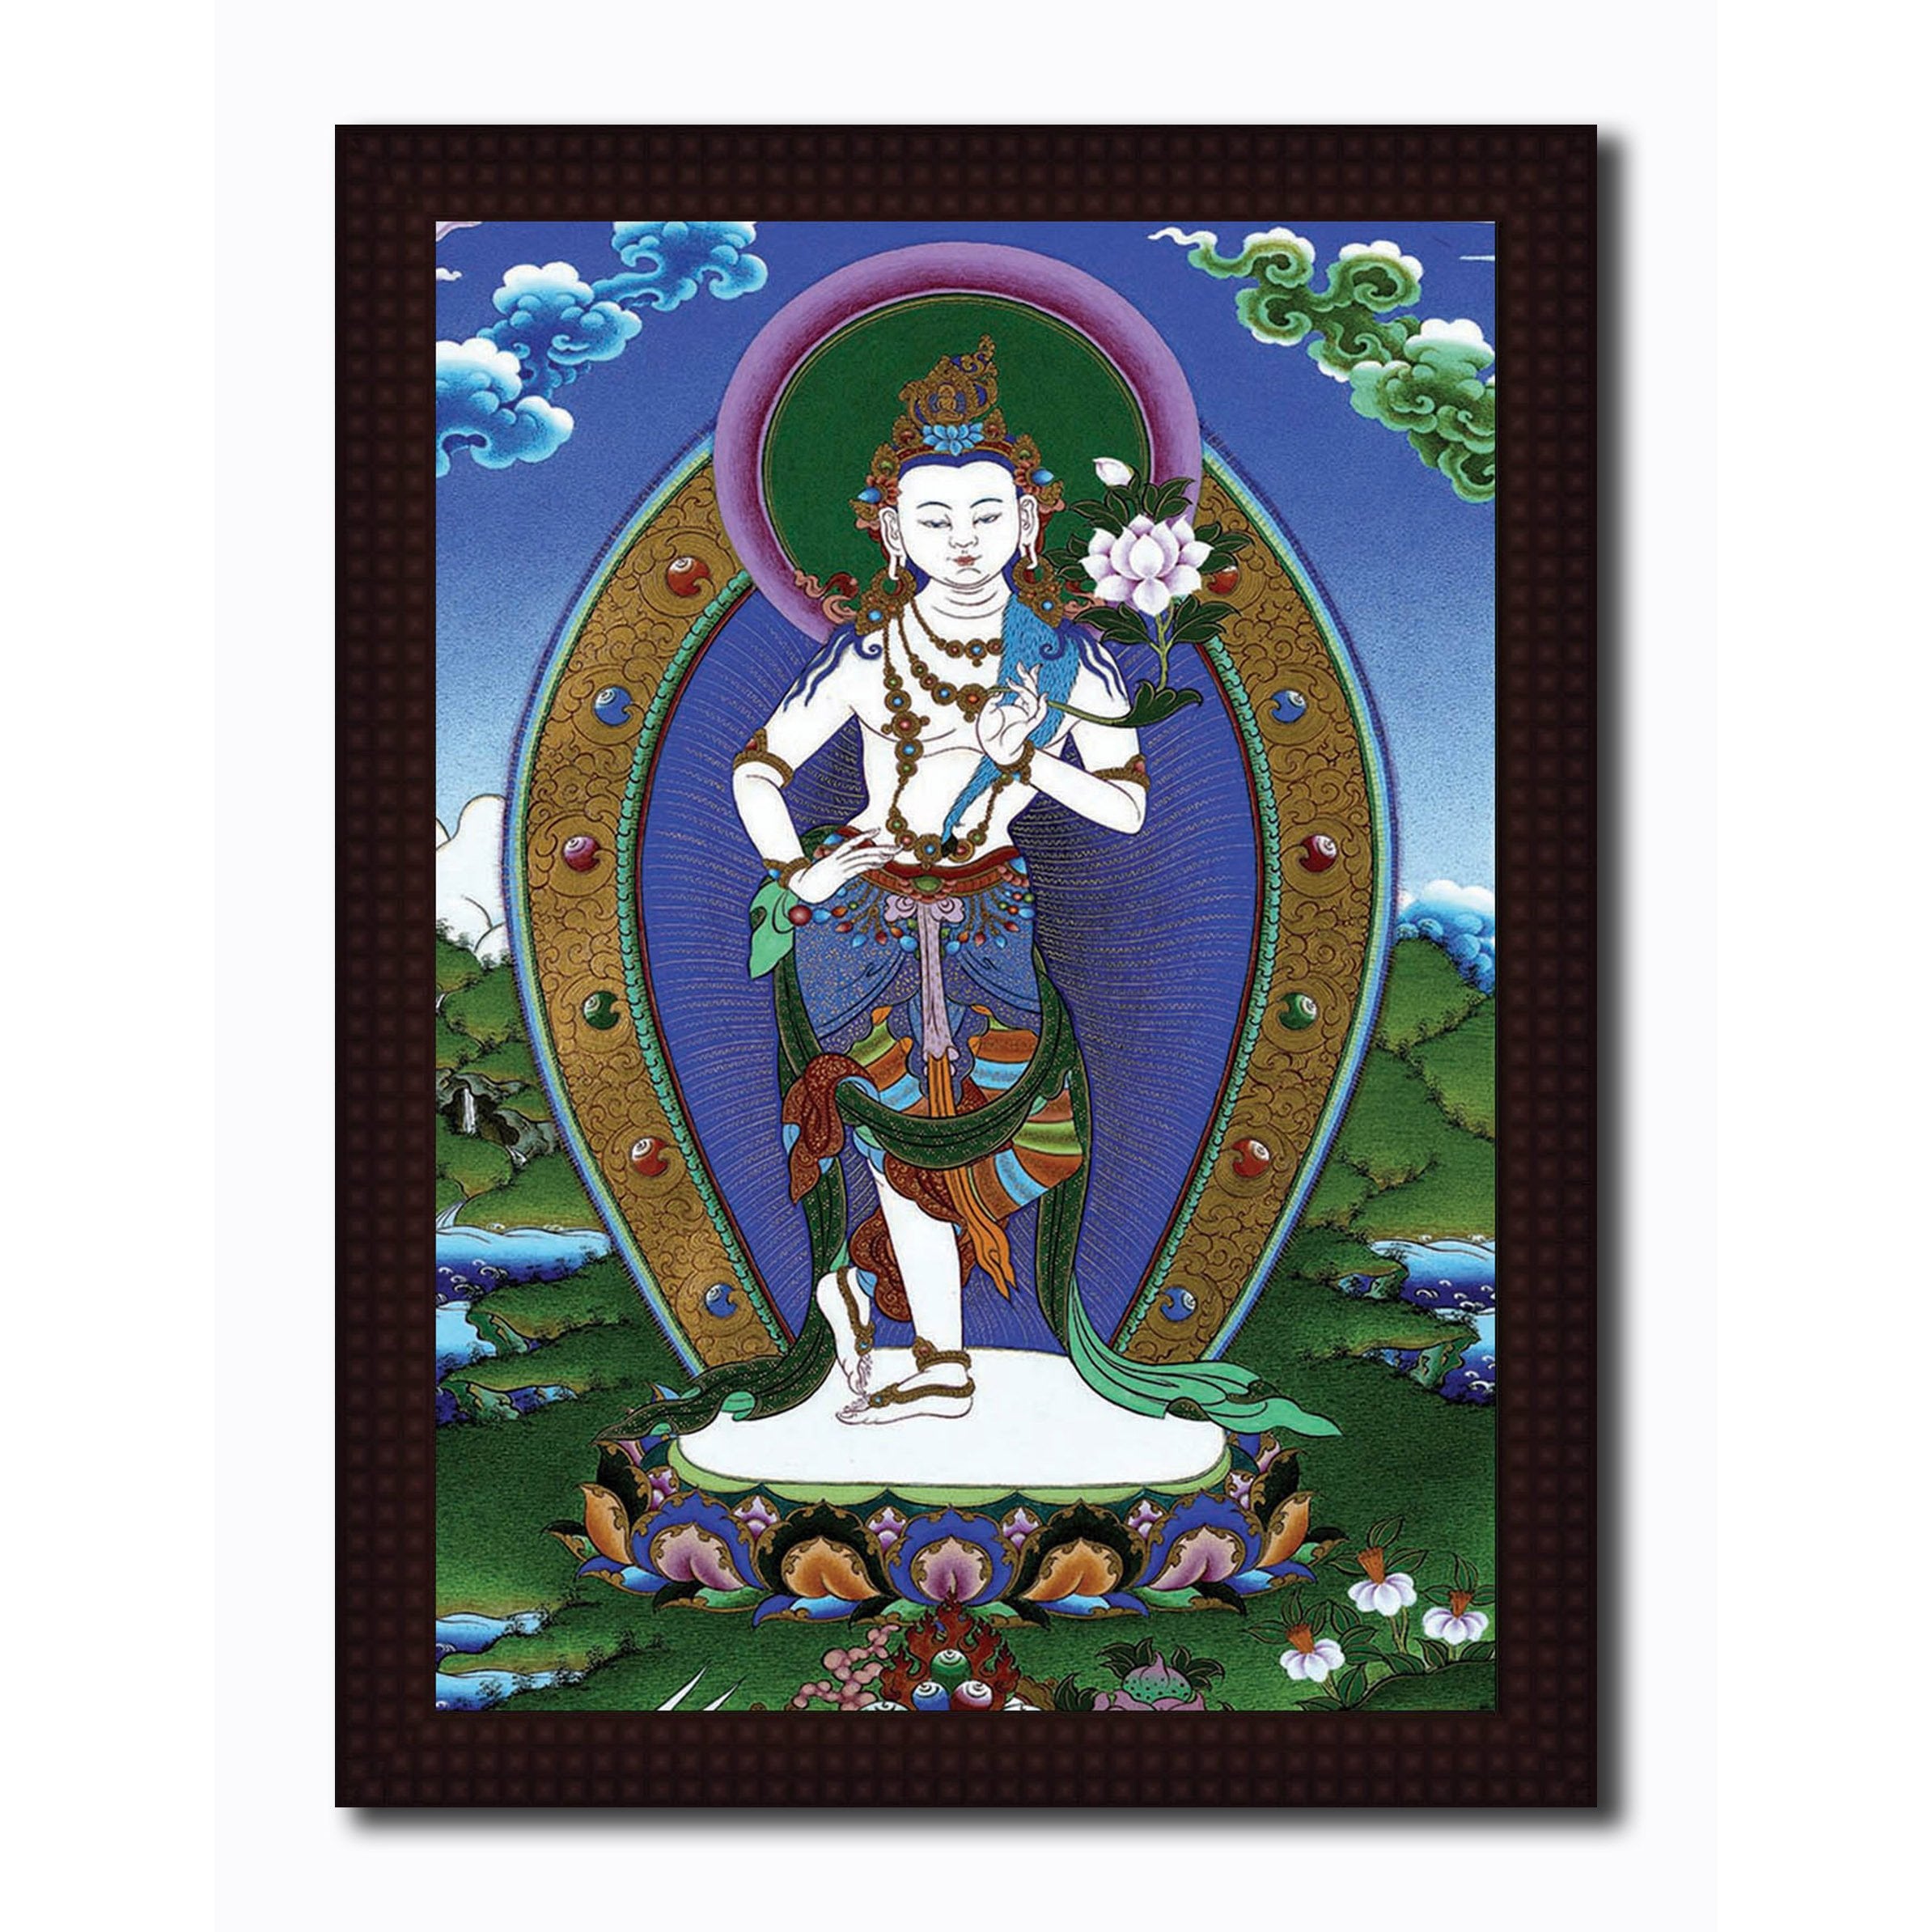 Dancing Lord Avalokiteshvara